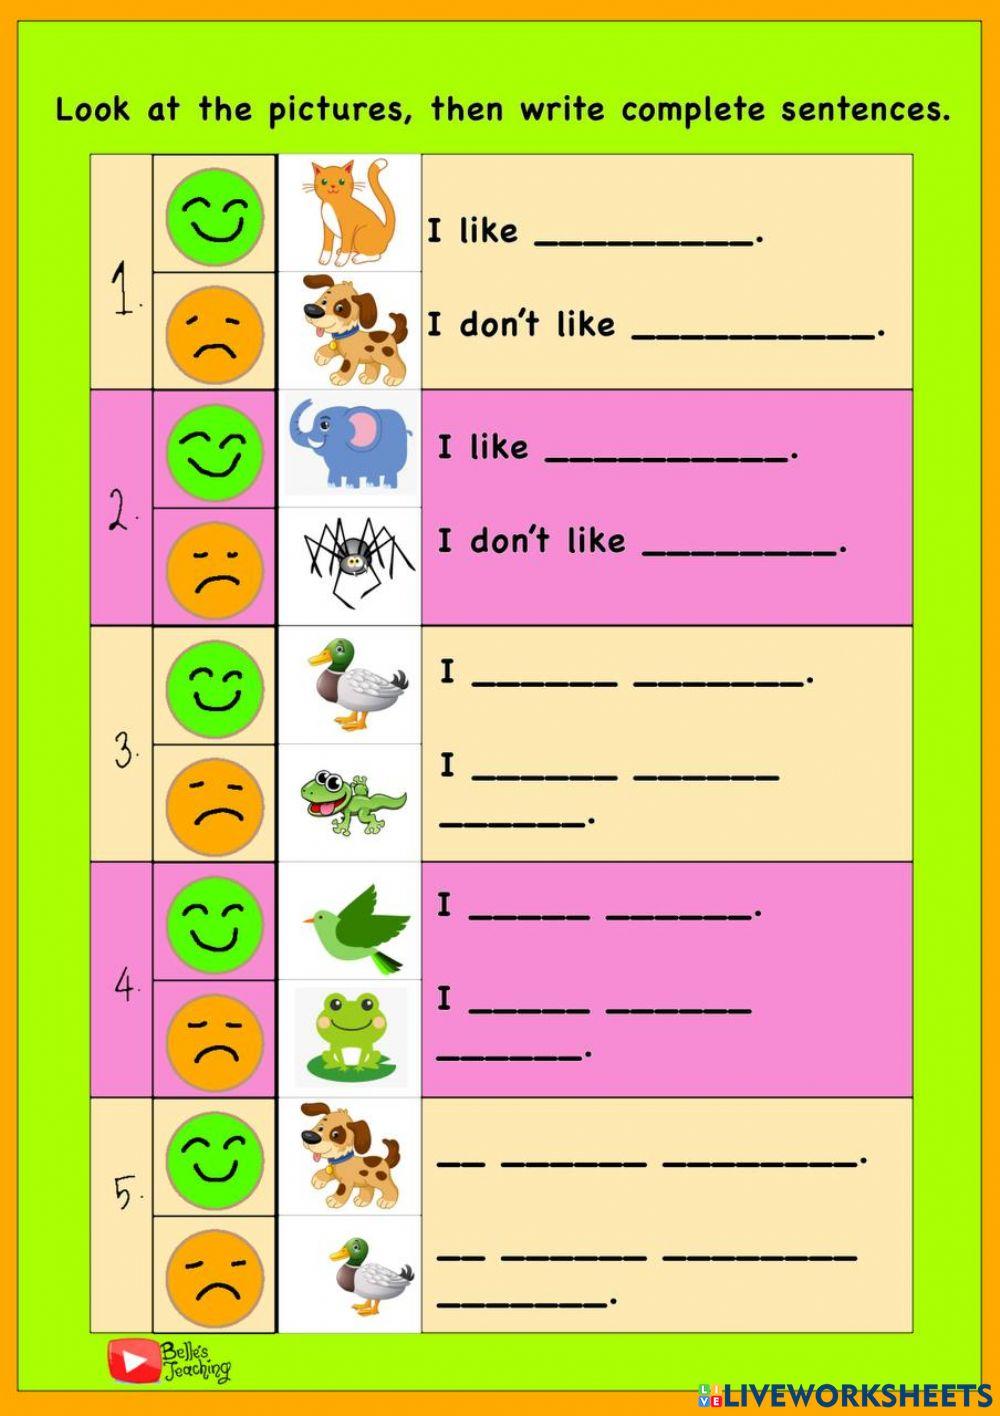 Pet Show Sentence Structure